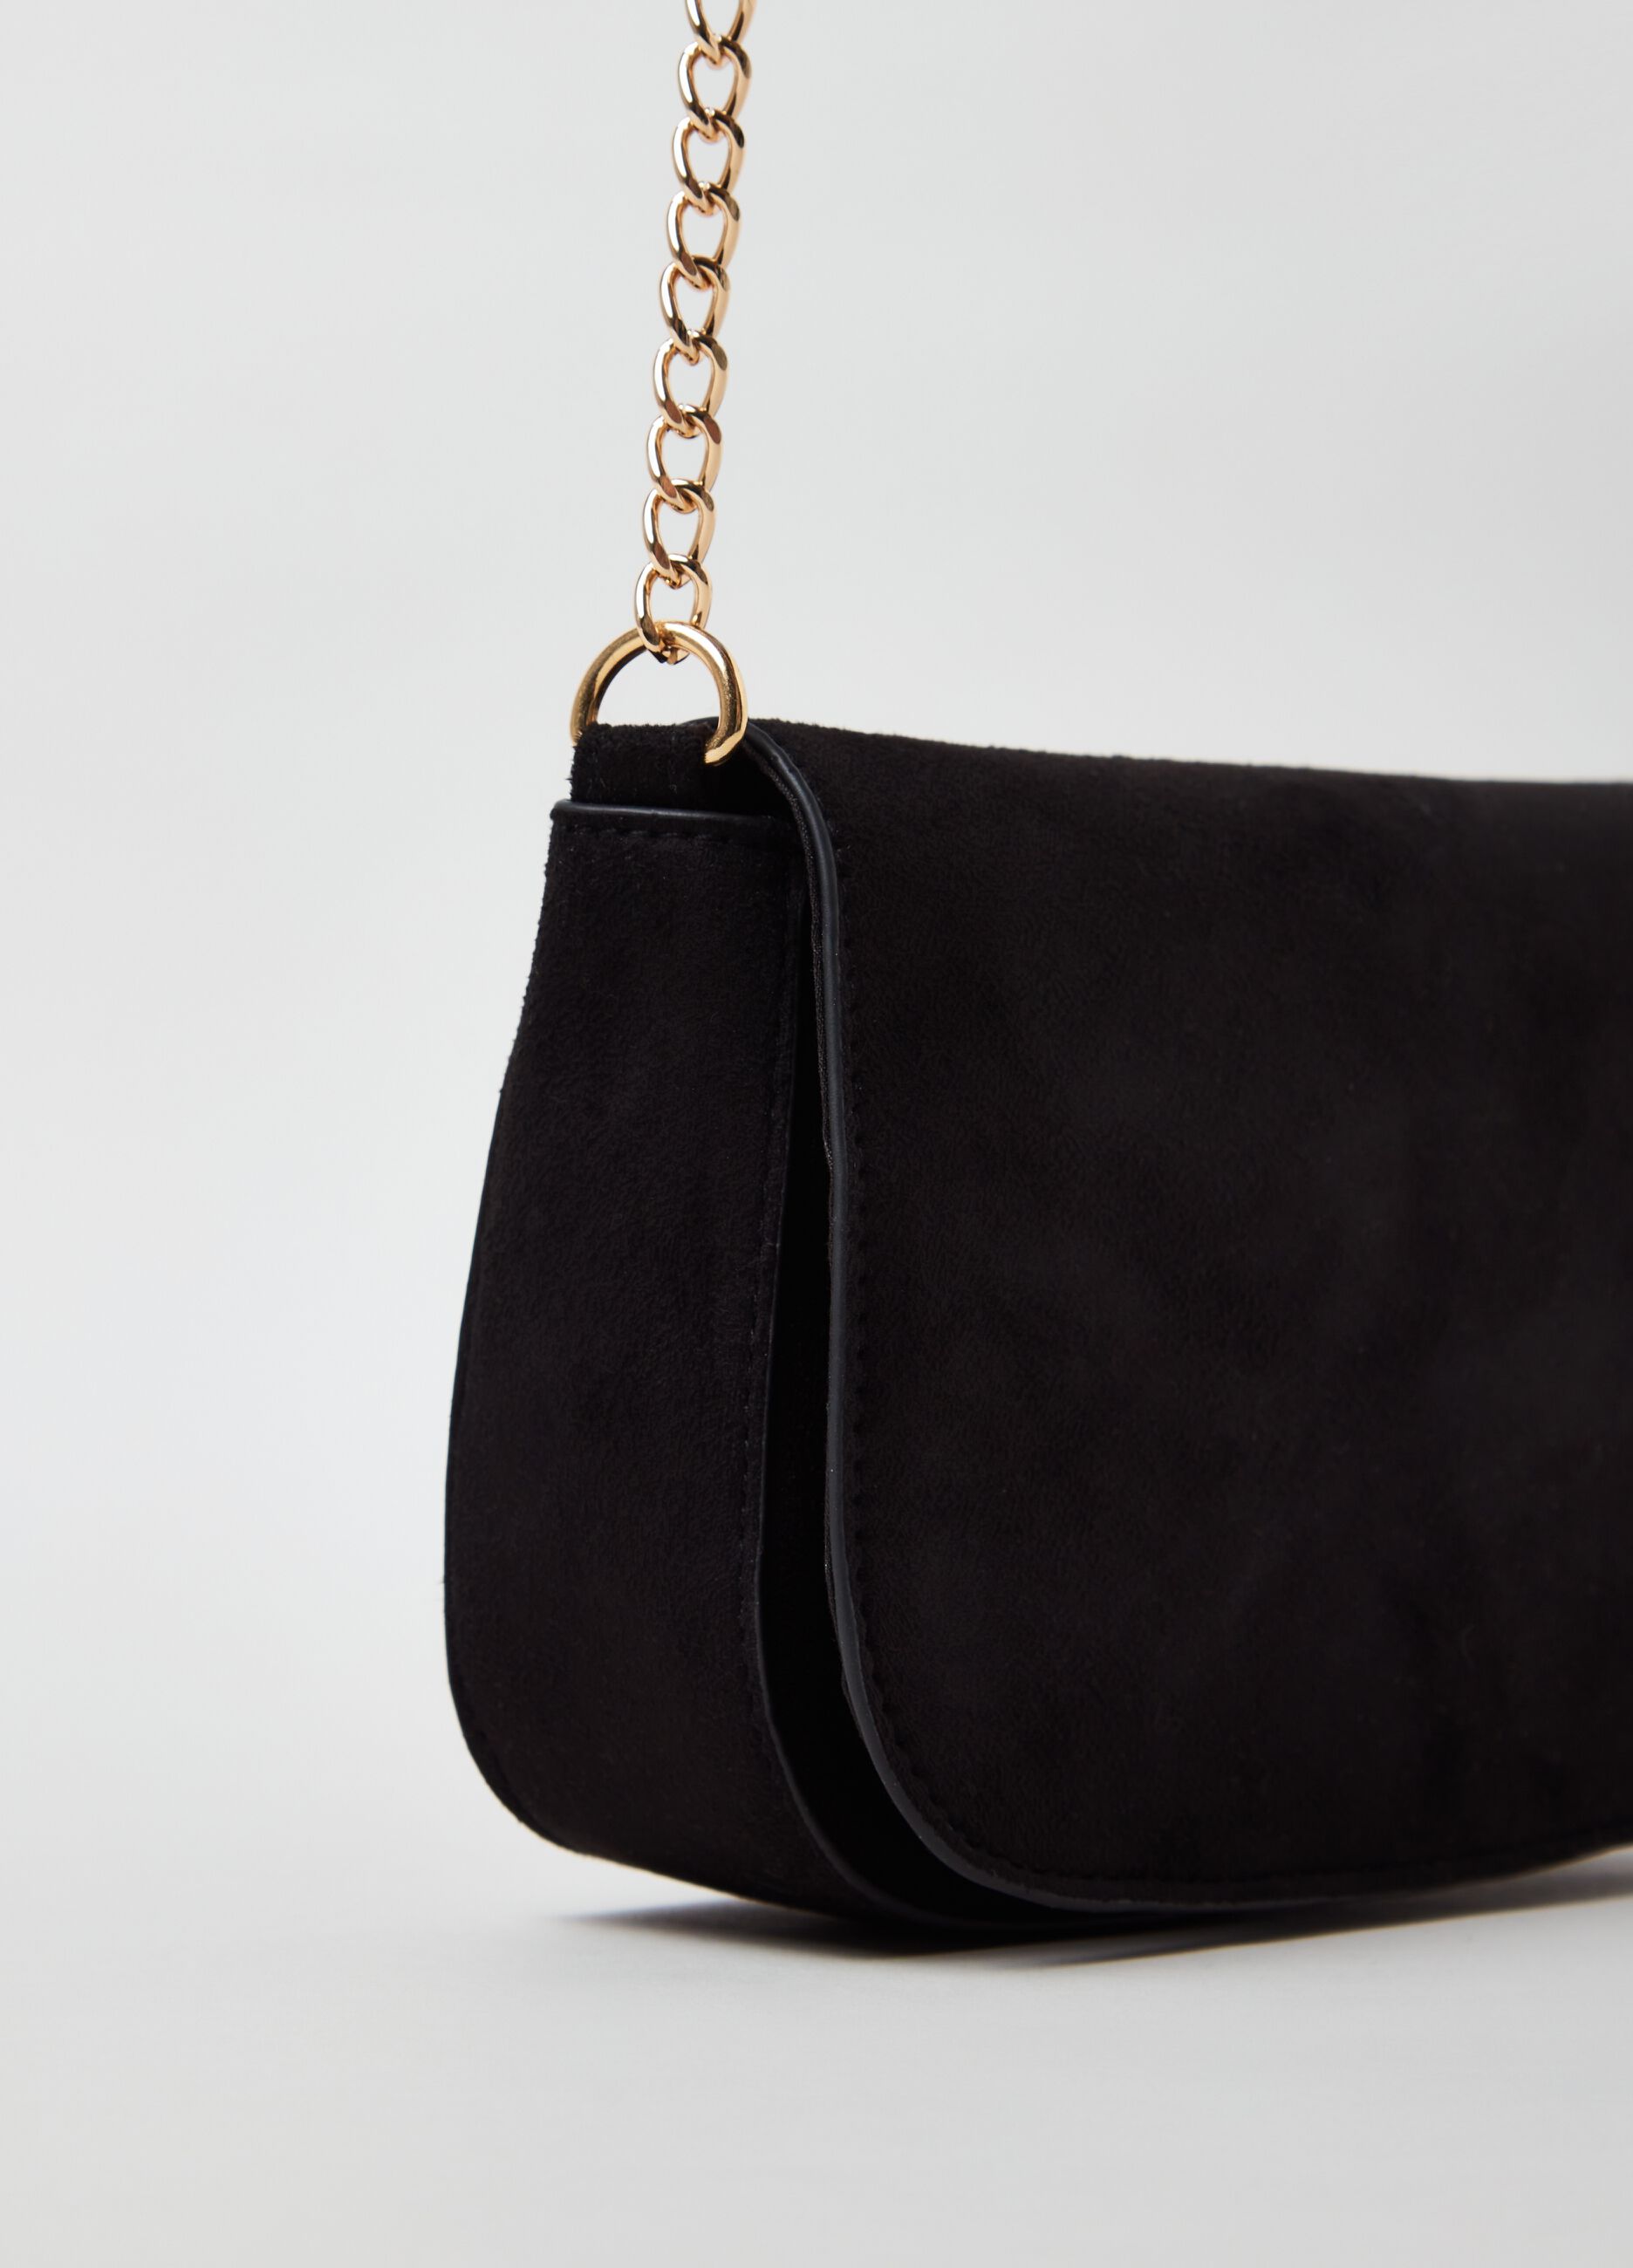 Amazon.com: Black Suede Handbag